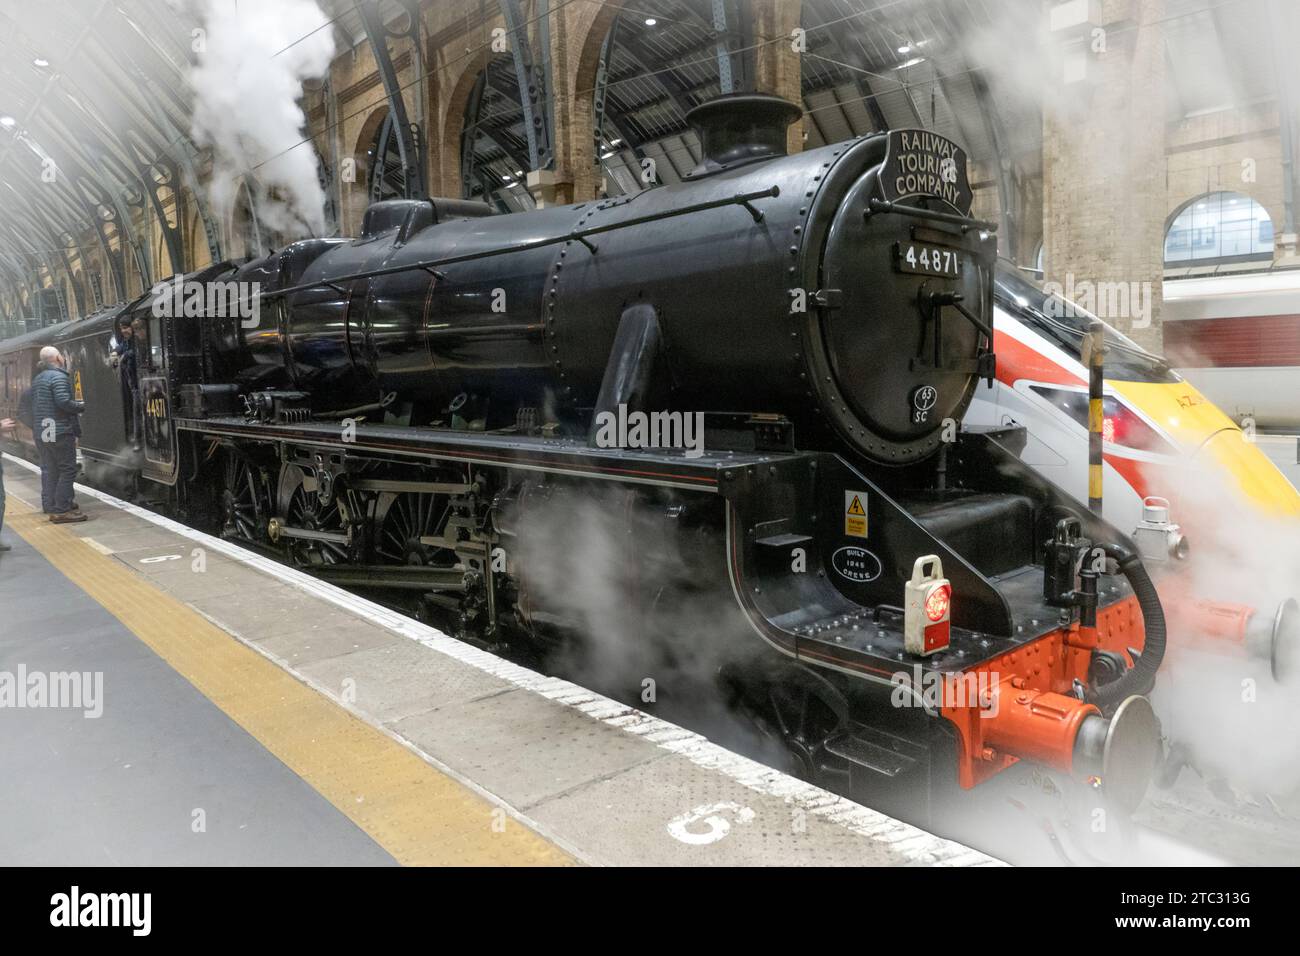 Railway Touring Company 'Lincoln Christmas Express remorqué par LMS Black 5 locomotive 44871 à Kings Cross Station Londres Royaume-Uni Banque D'Images